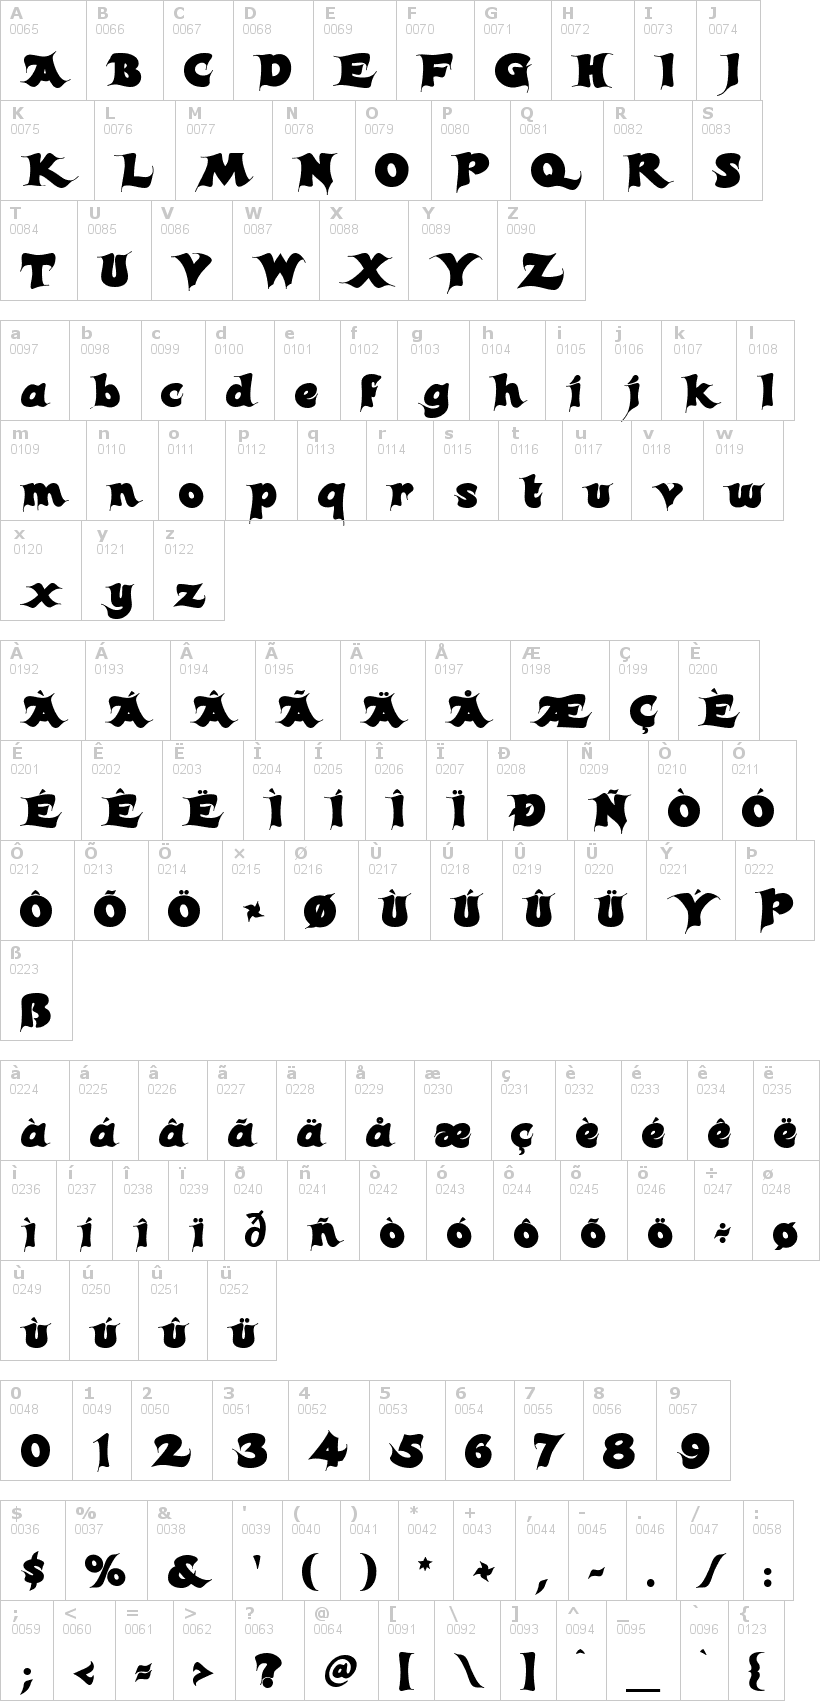 Lettere dell'alfabeto del font candles con le quali è possibile realizzare adesivi prespaziati